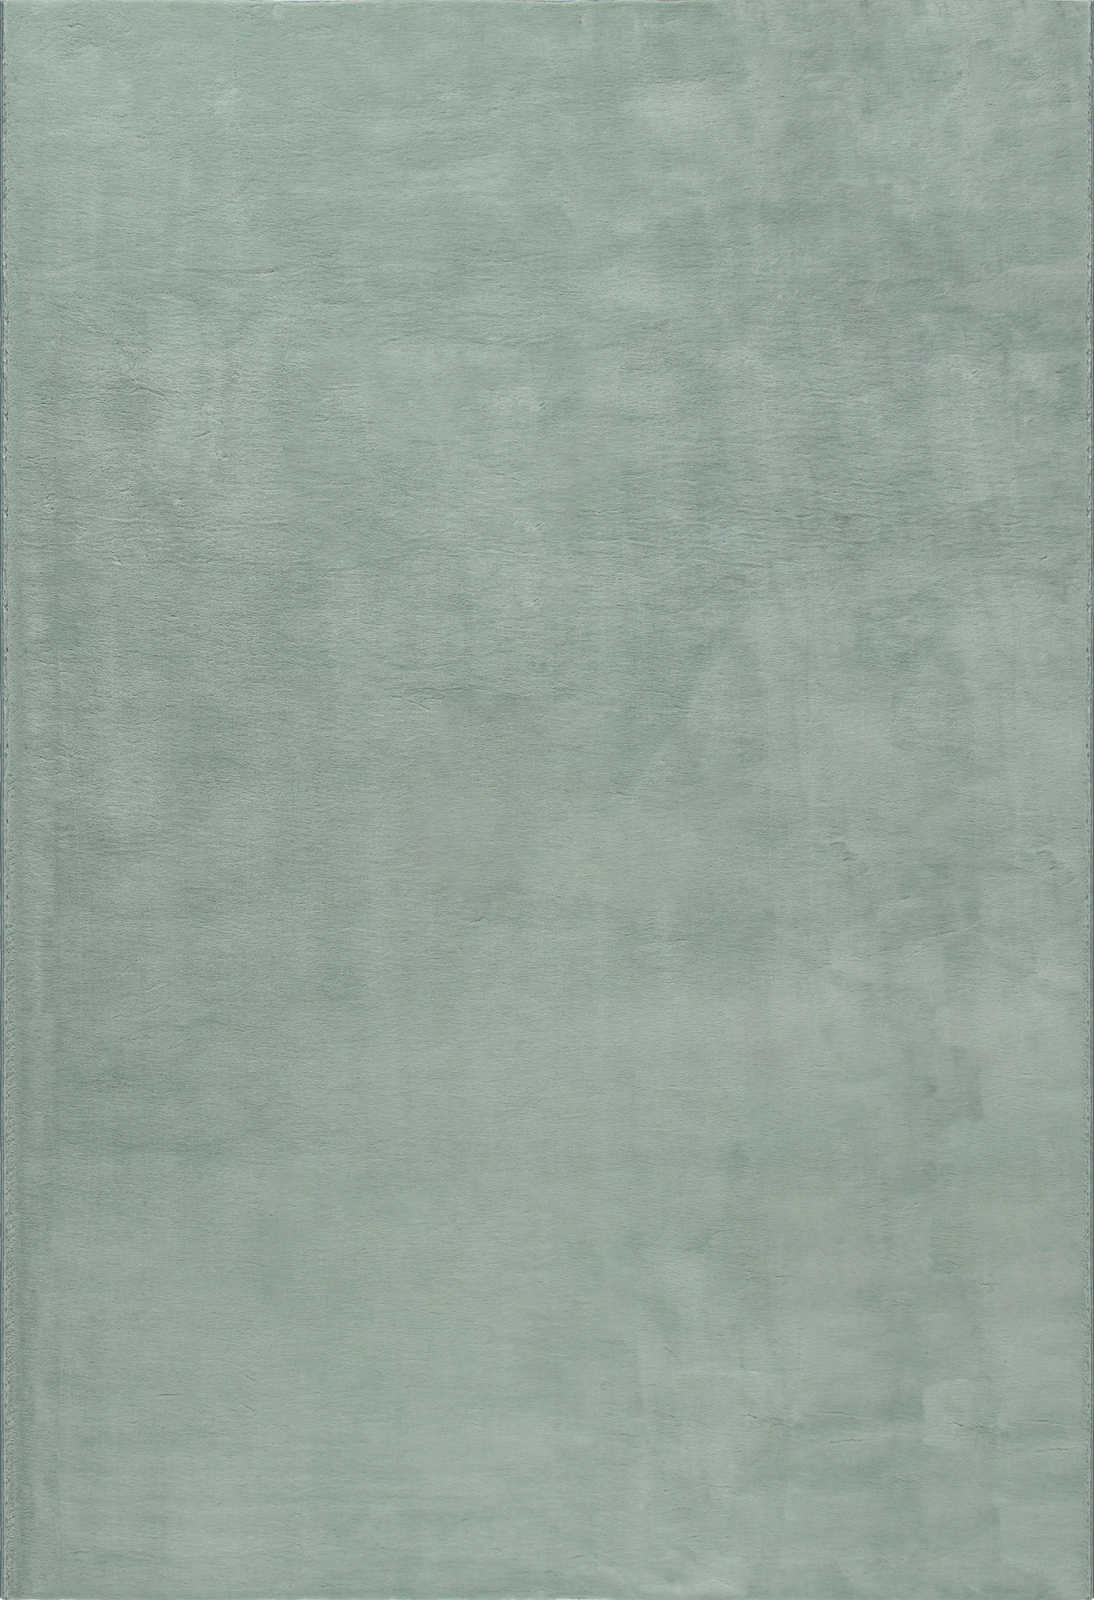             Weicher Hochflor Teppich in sanften Grün – 200 x 140 cm
        